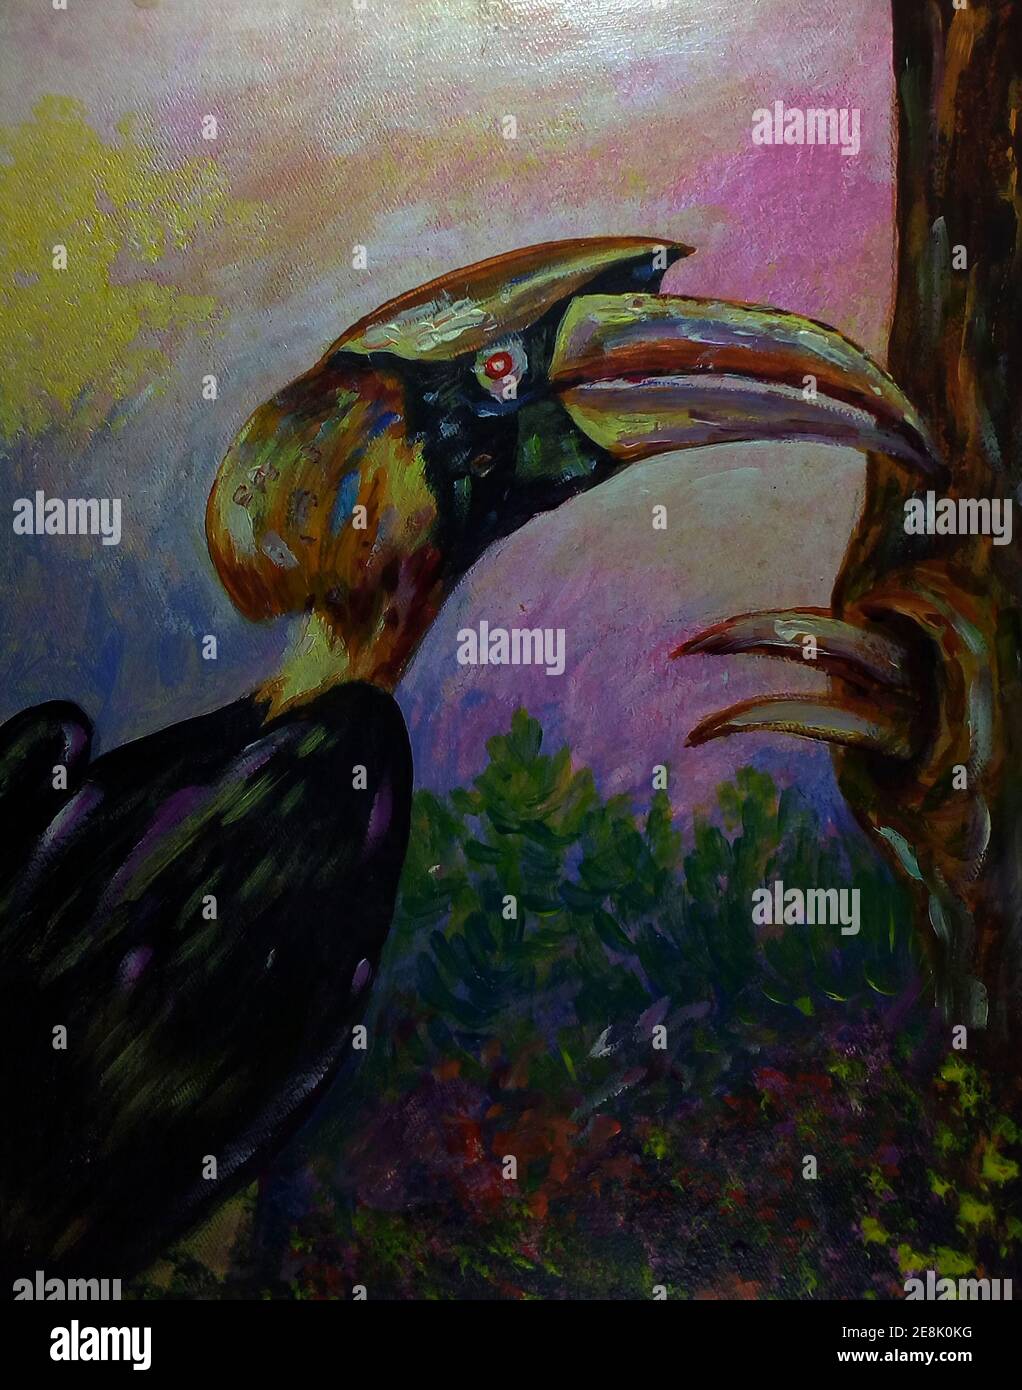 Kunst, Malerei, Hintergründe für Design, ölfarbener Hornvogel aus thailand Stockfoto